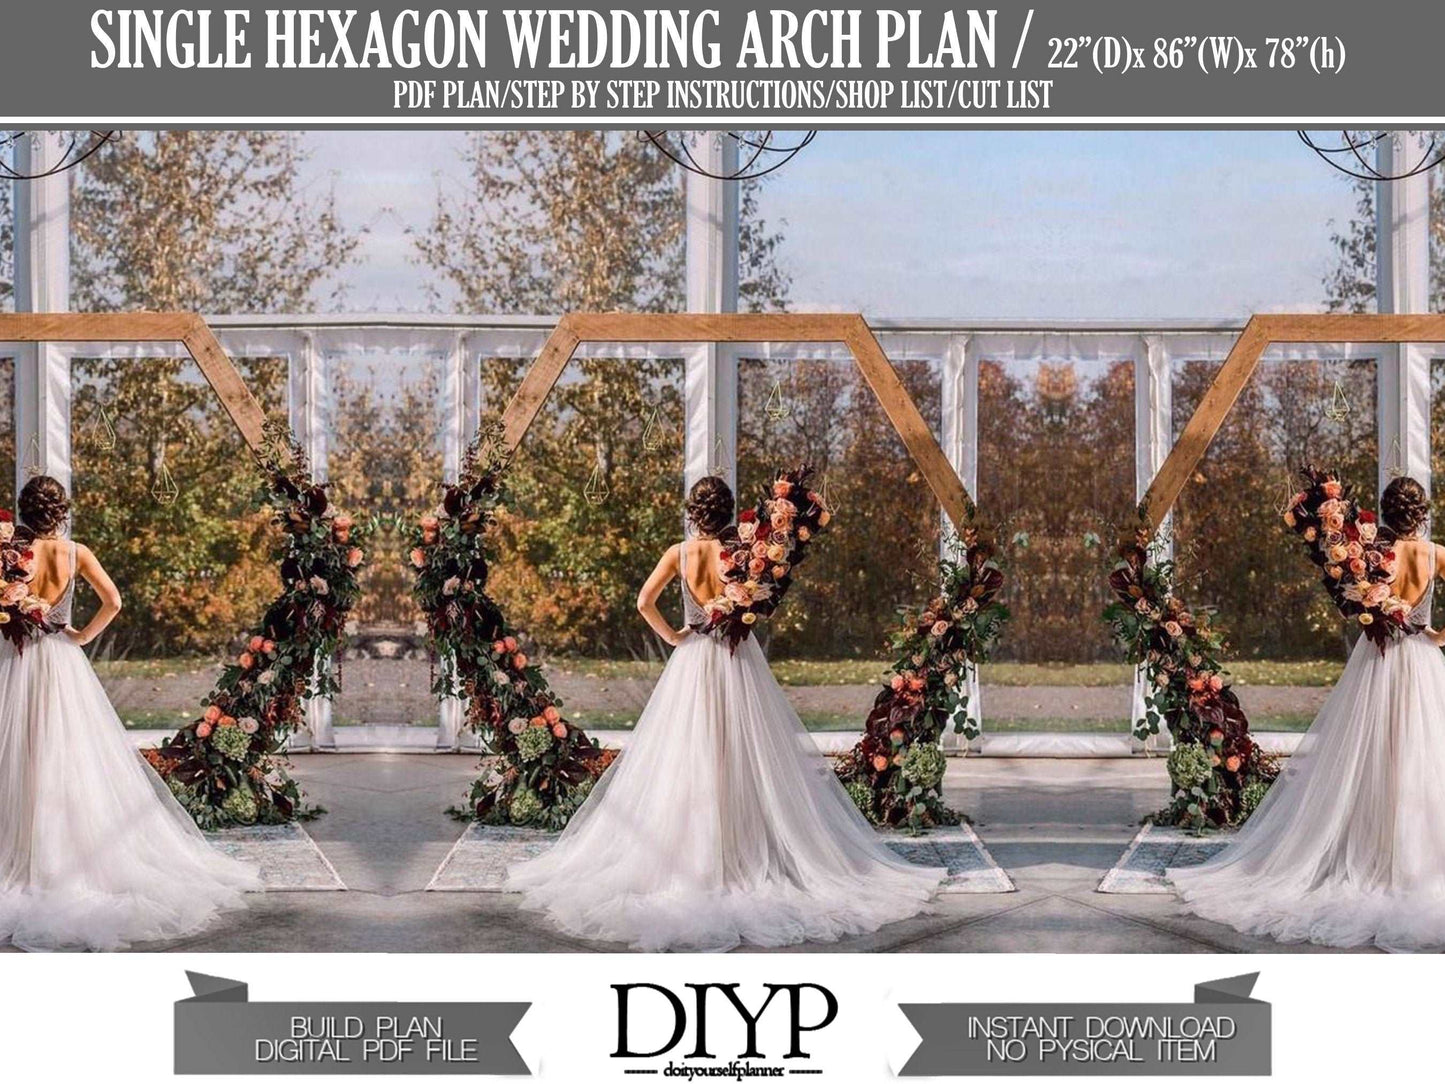 Portable hexagon wedding arbor plan - wedding arch ideas